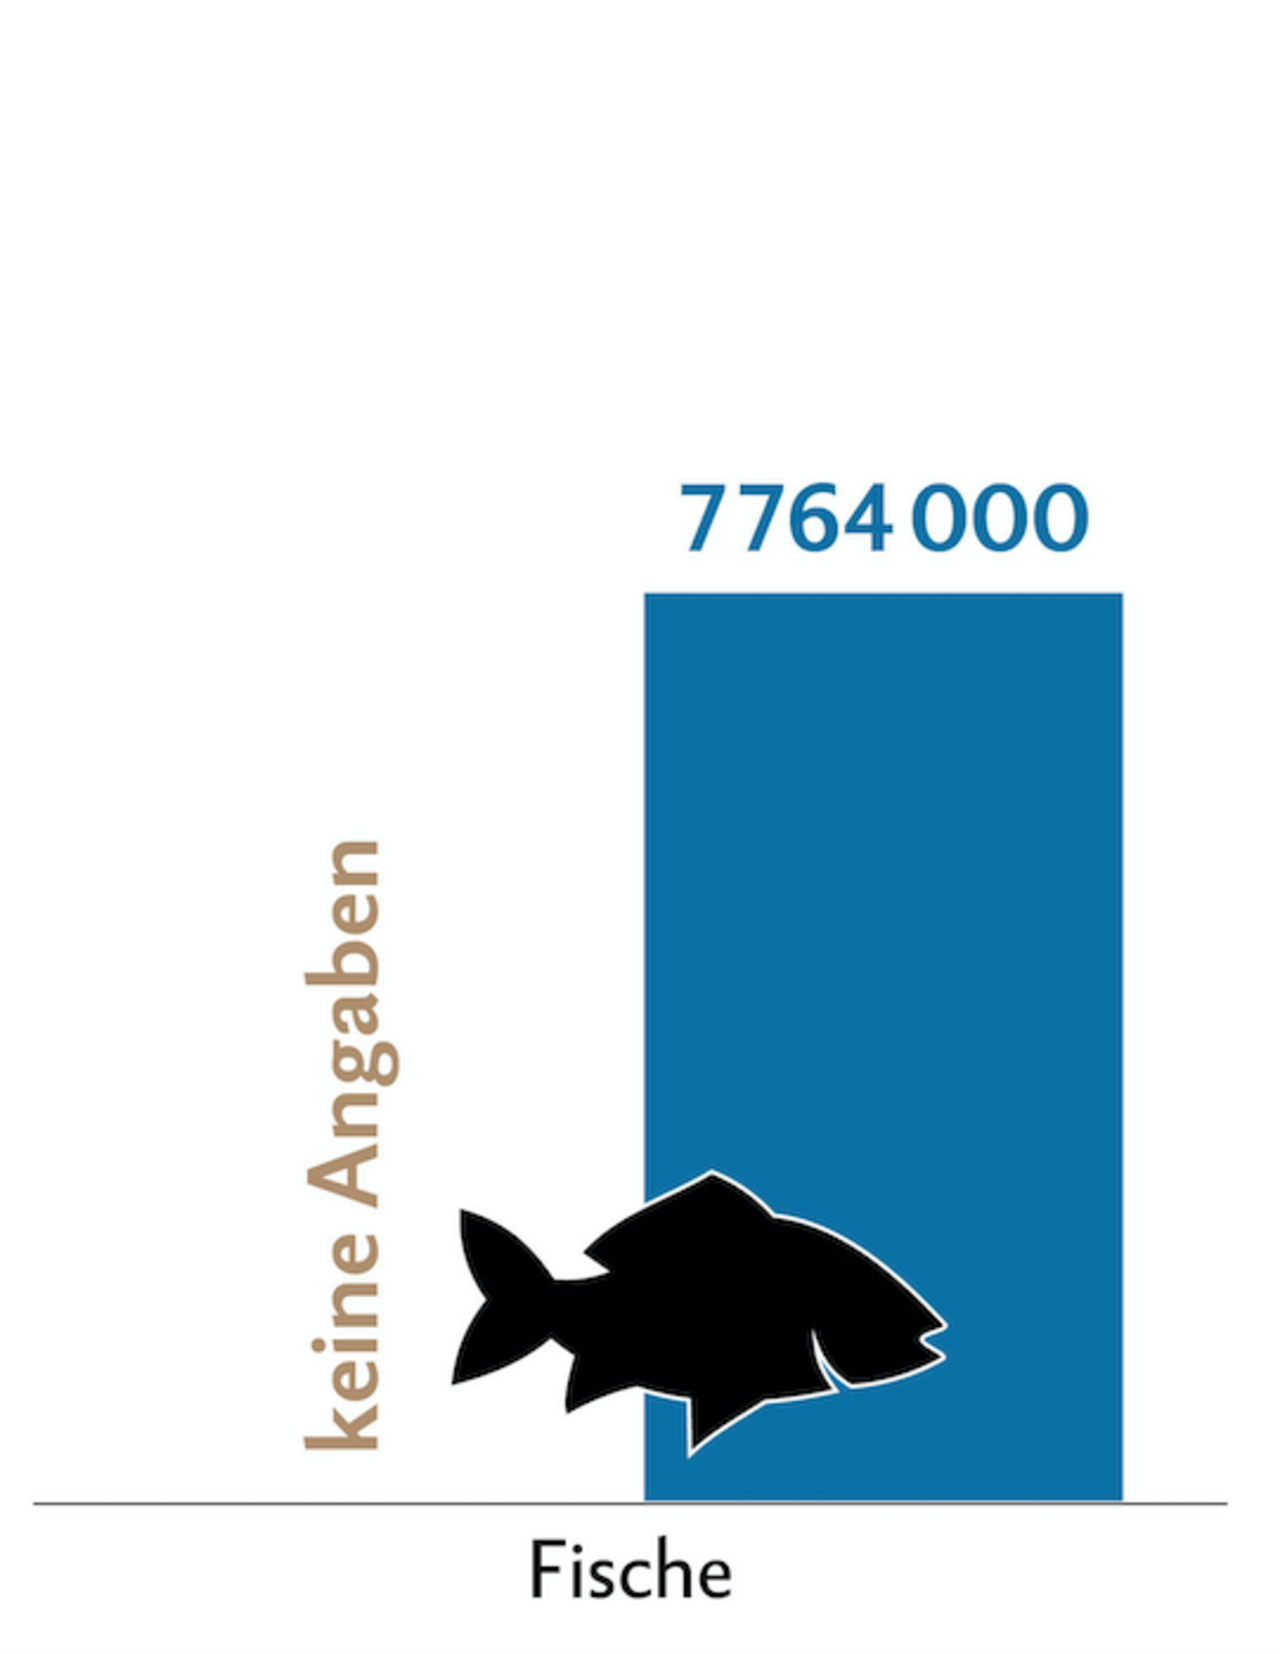 Balkendiagramm zeigt die Behandlungszahlen (blau) der Zuchtfische in der Schweiz.